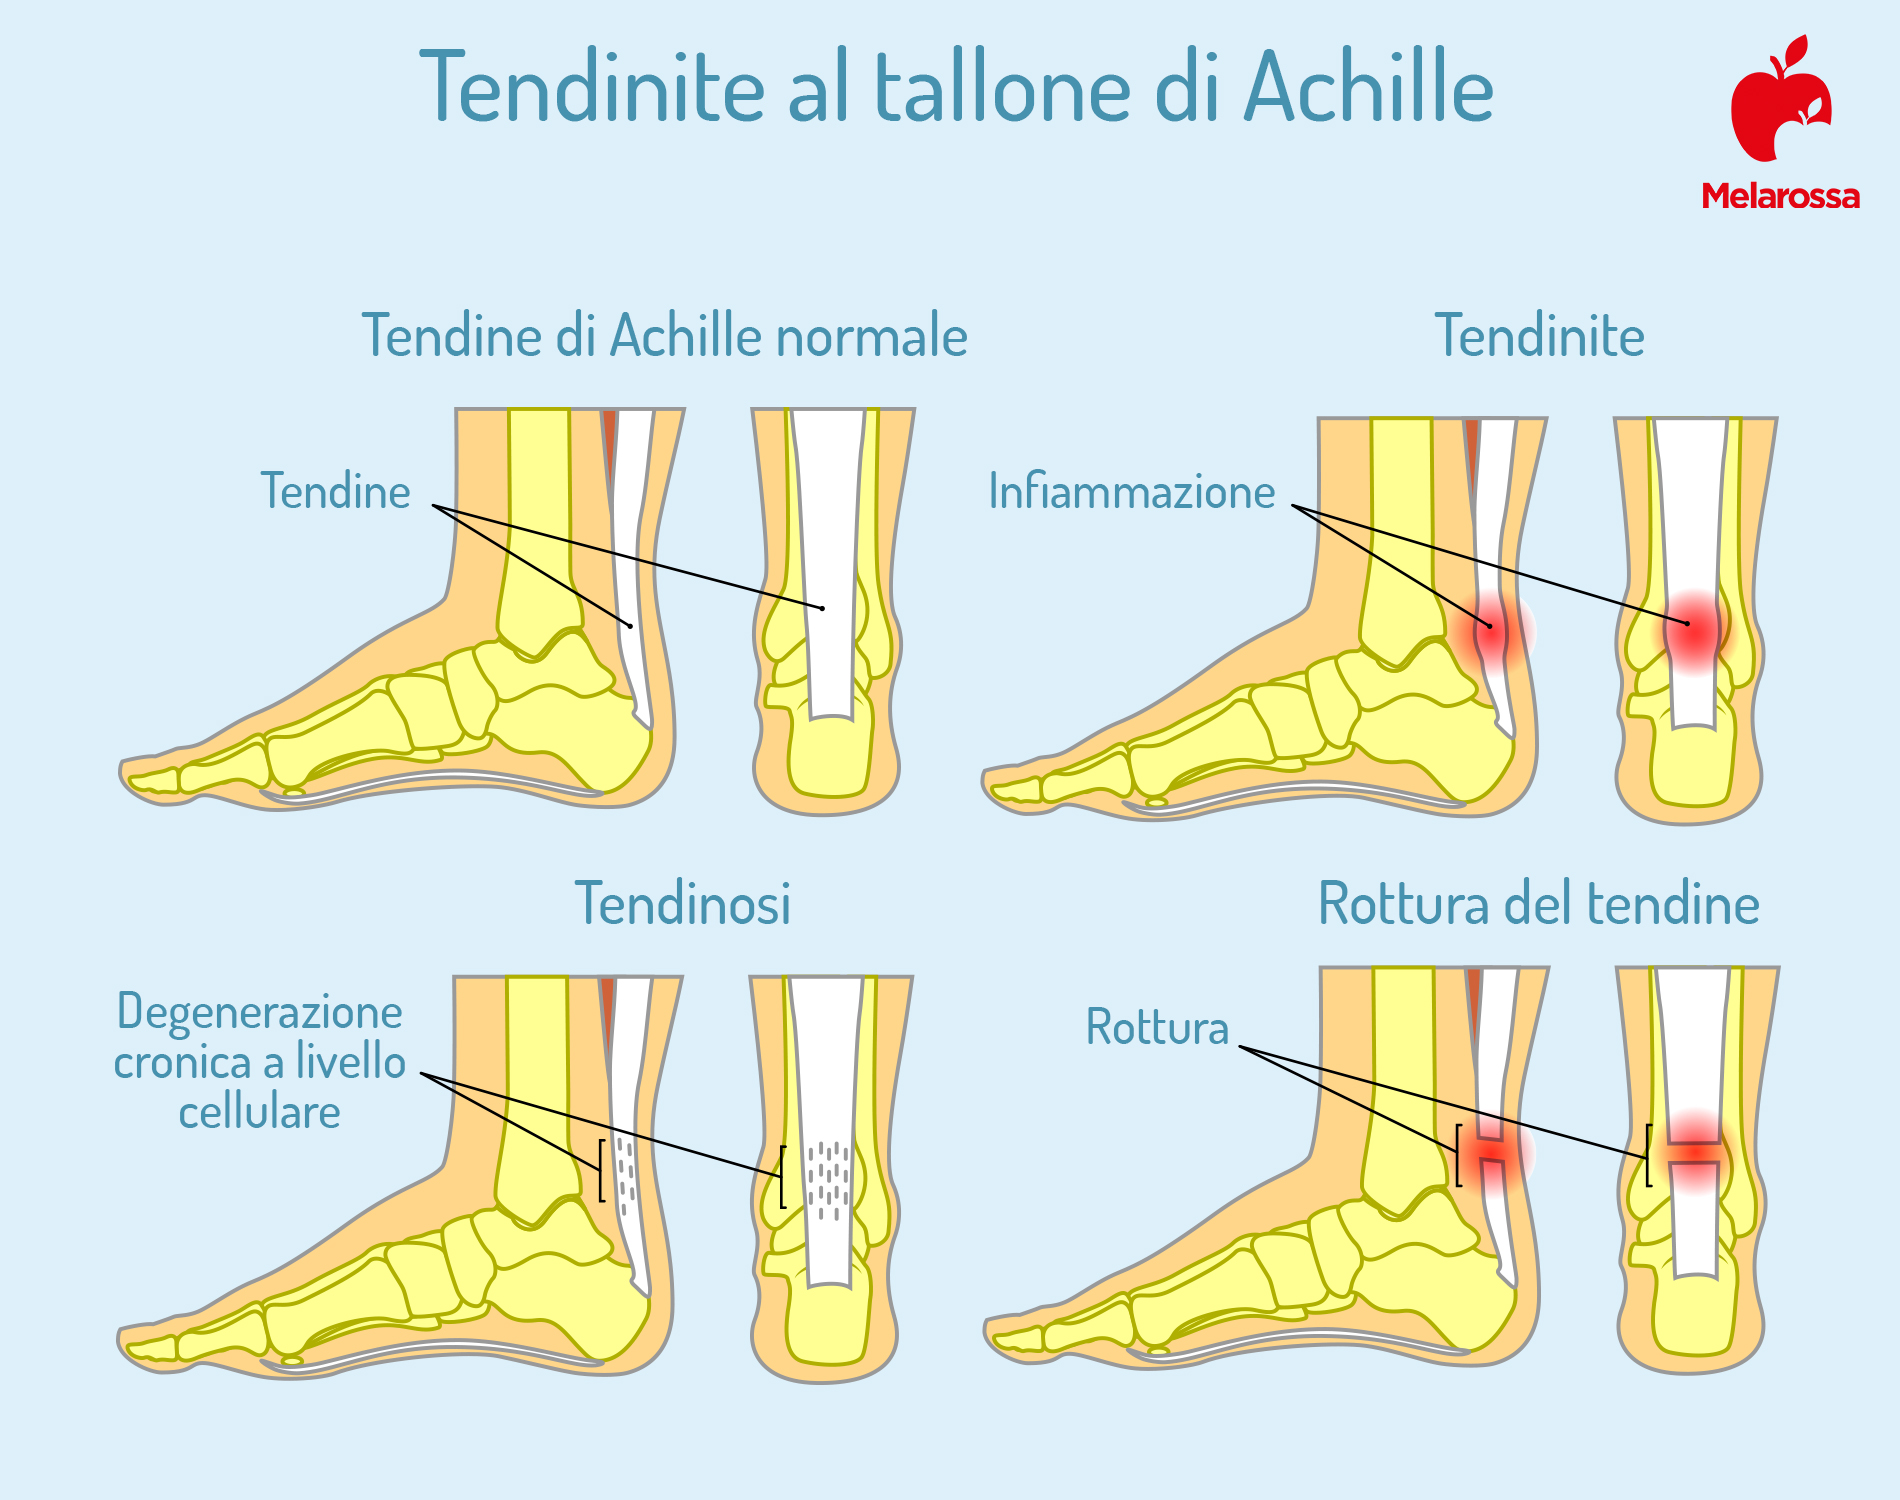 tendinite al tallone di Achille: cause e sintomi